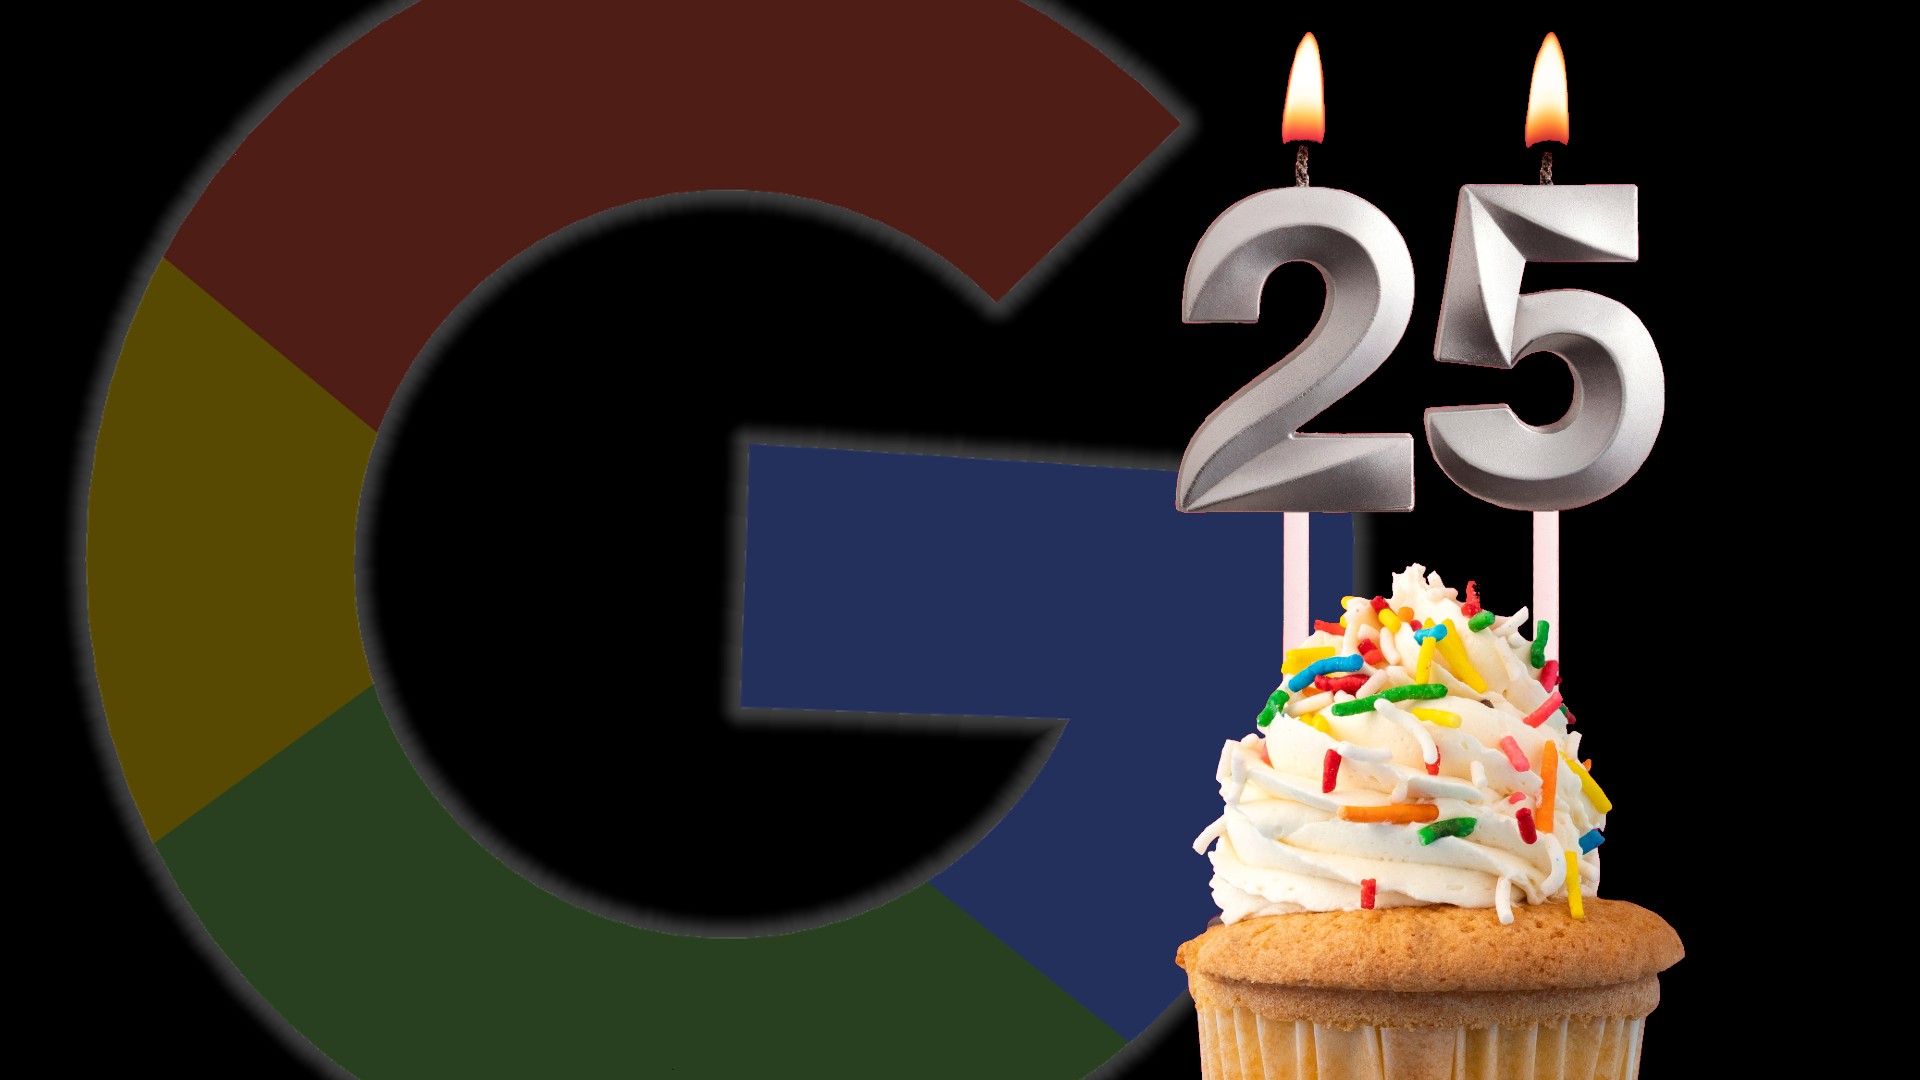 Ilustração mostra o símbolo do Google escondido atrás de um bolo de aniversário de 25 anos